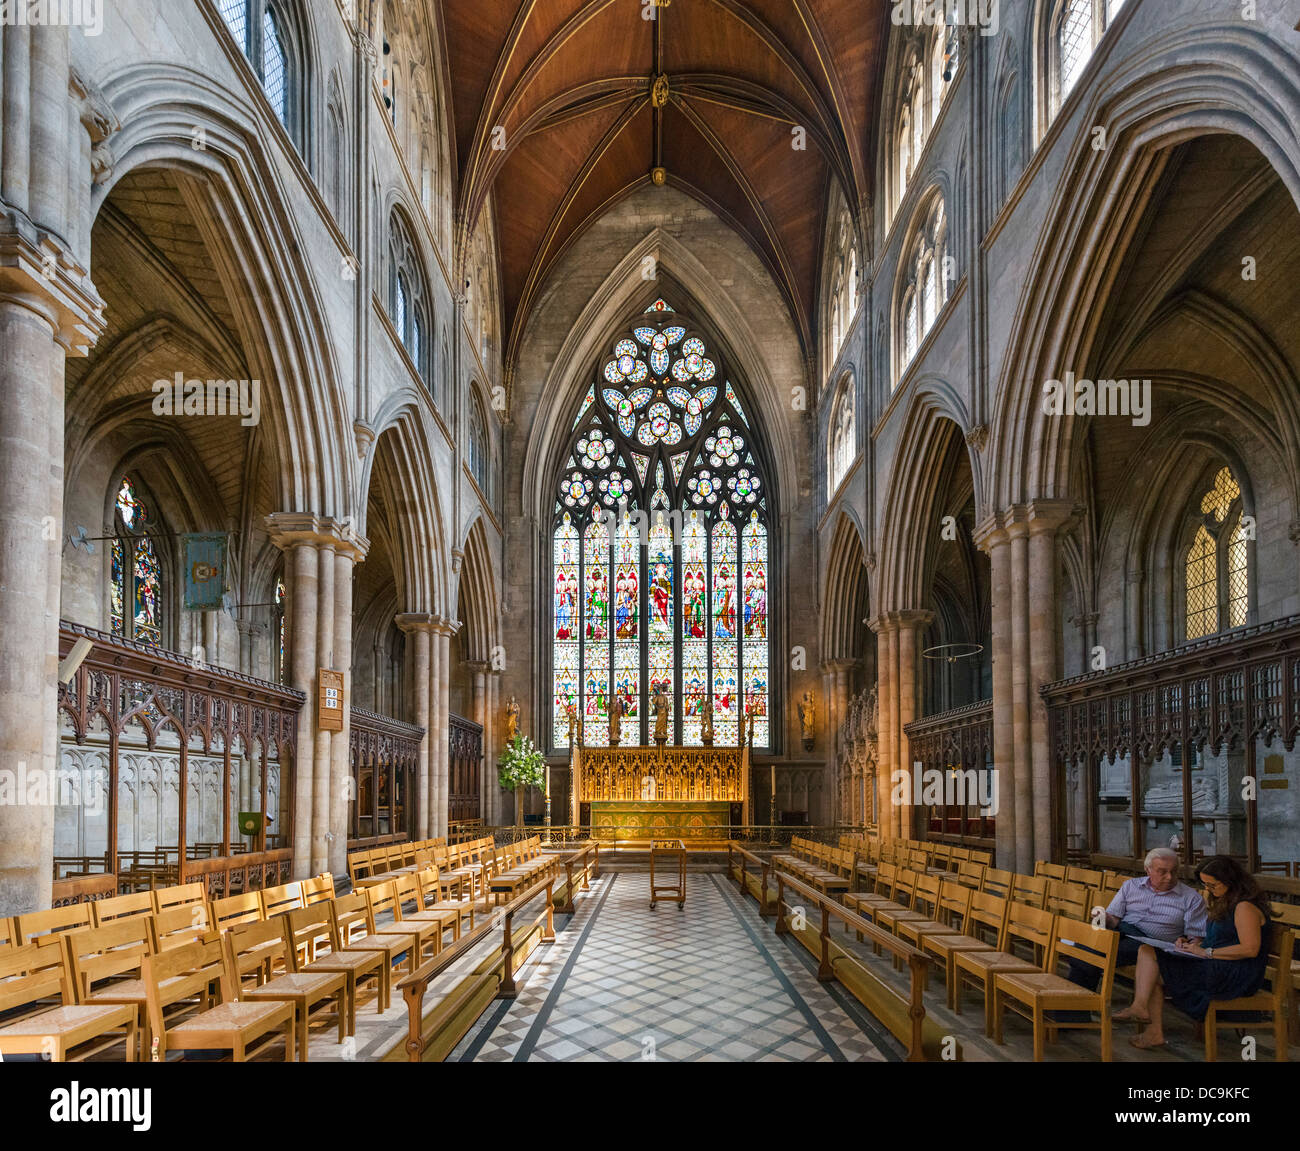 Interior de la Catedral de Ripon, Ripon, North Yorkshire, Inglaterra, Reino Unido. Foto de stock